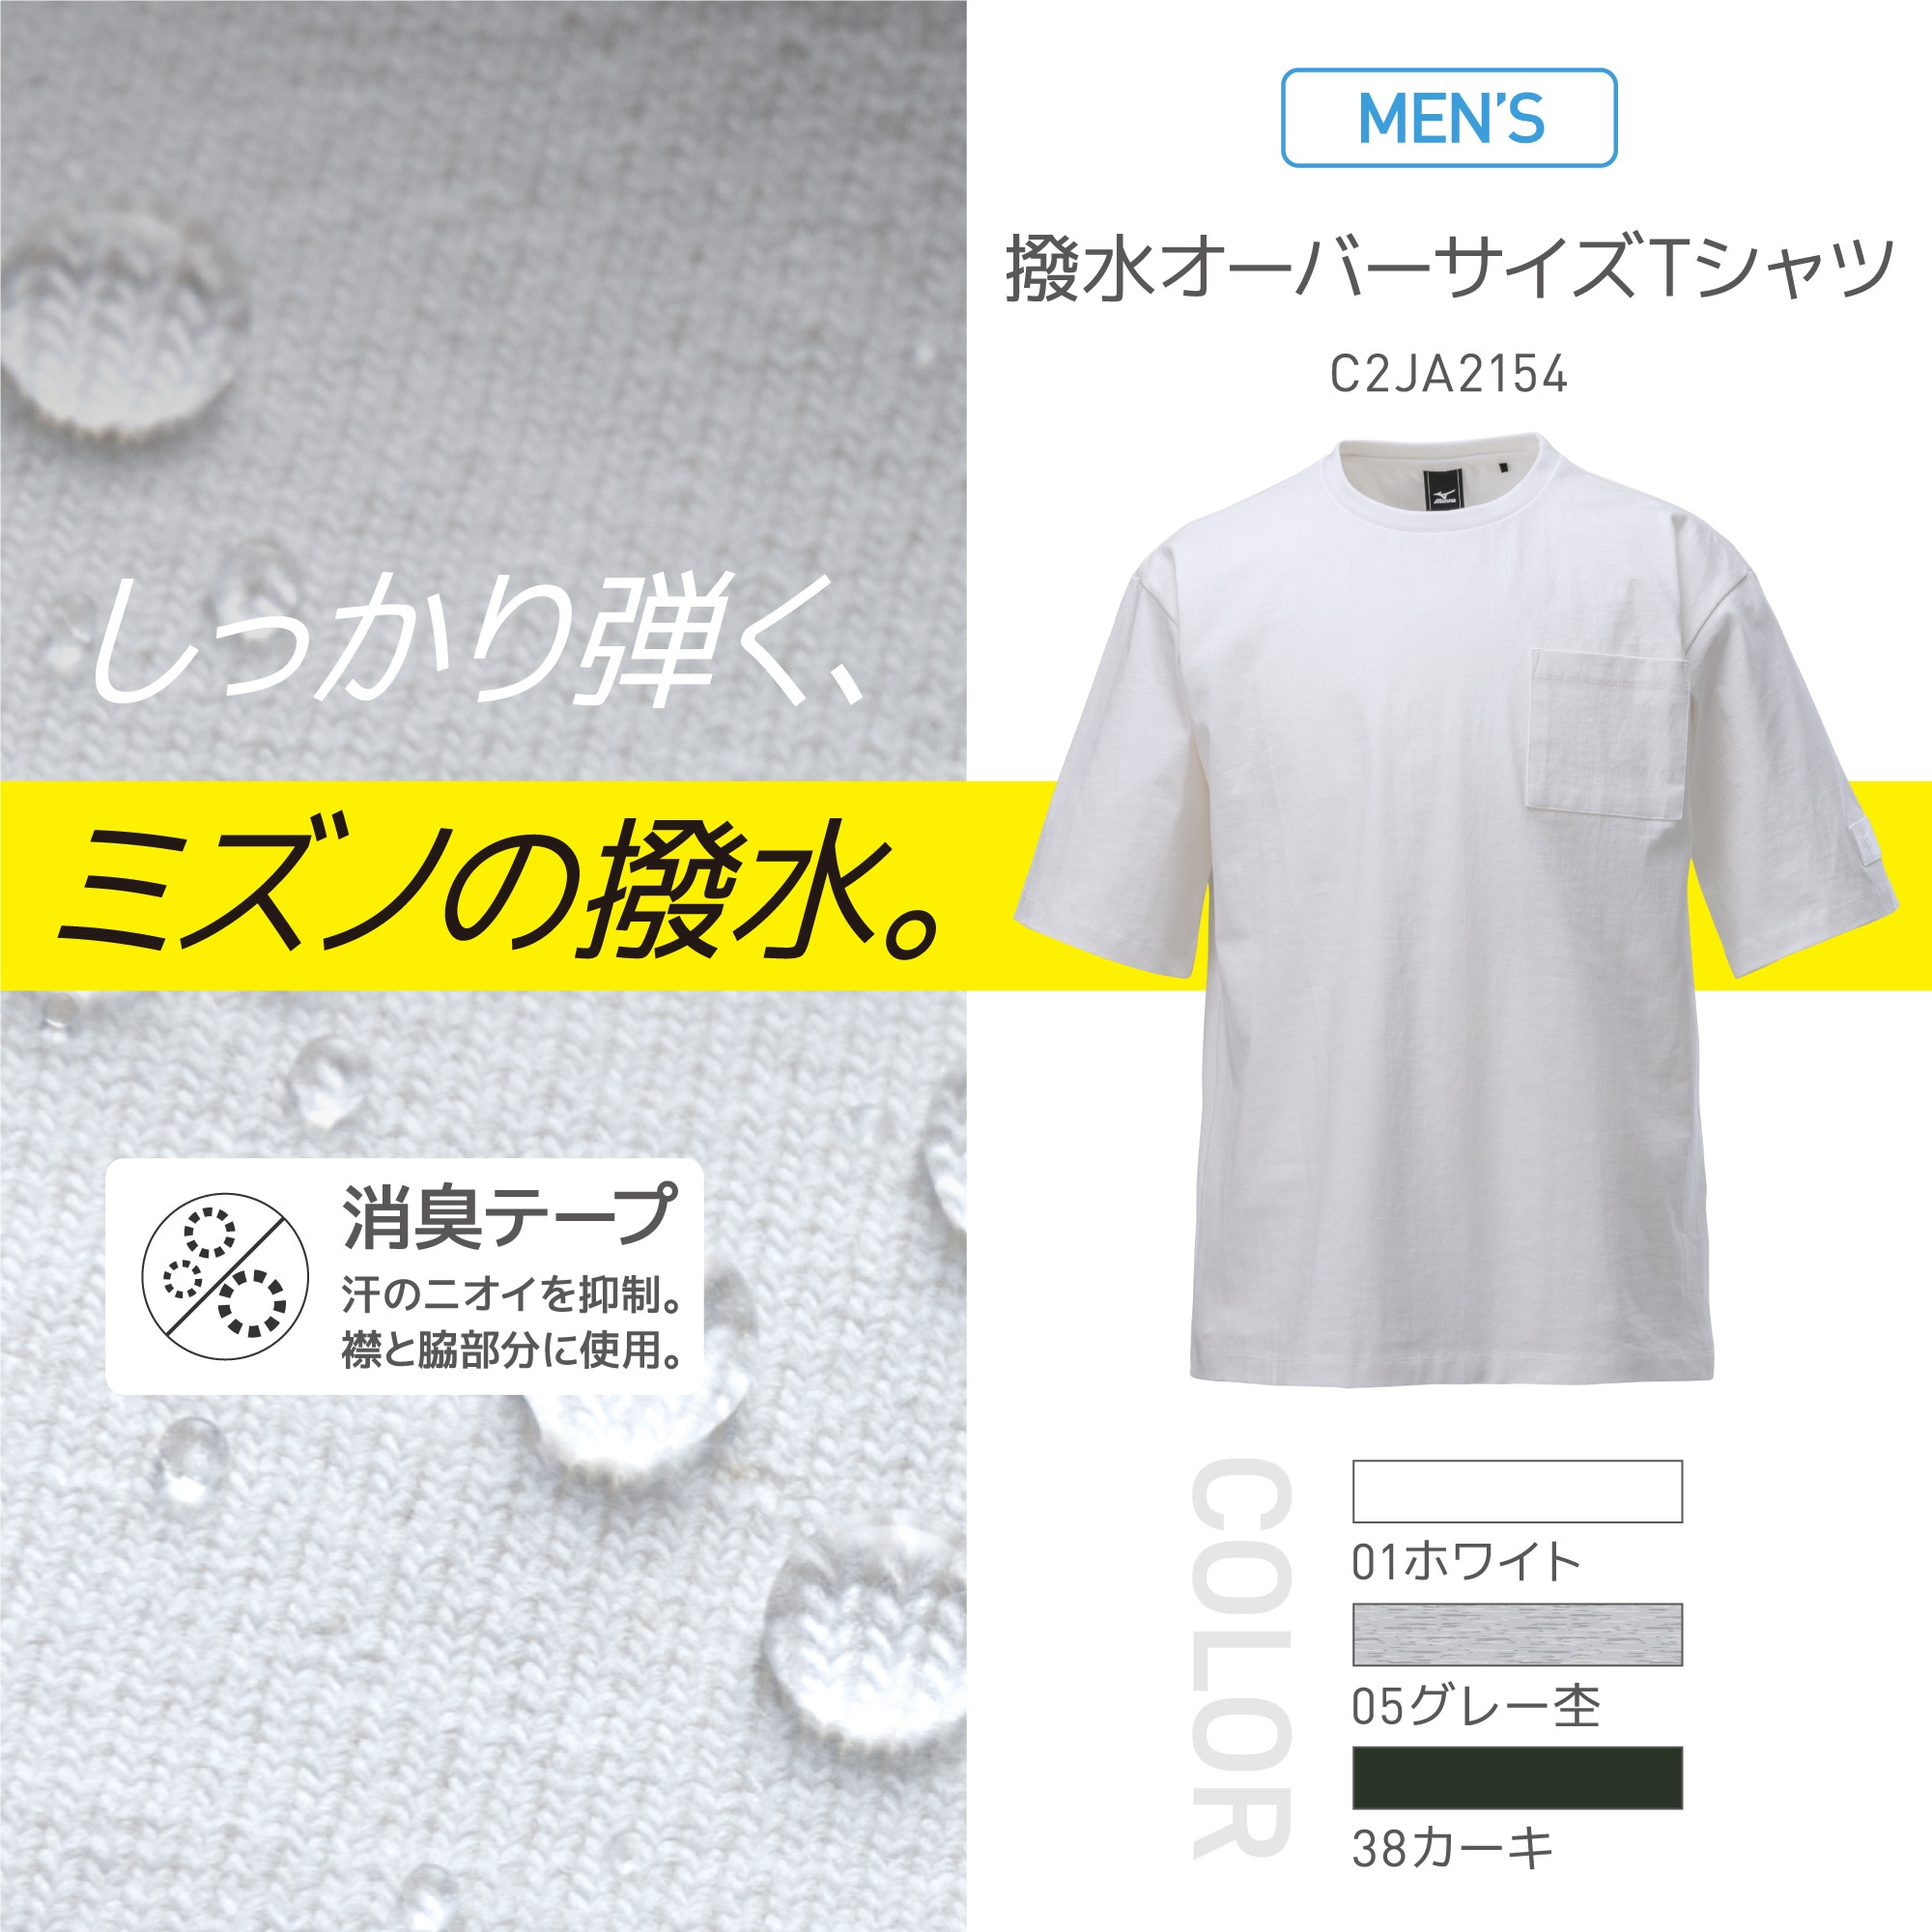 撥水オーバーサイズTシャツ(半袖)[メンズ]|C2JA2154|ウエア|健康・日常生活品|ミズノ公式オンライン